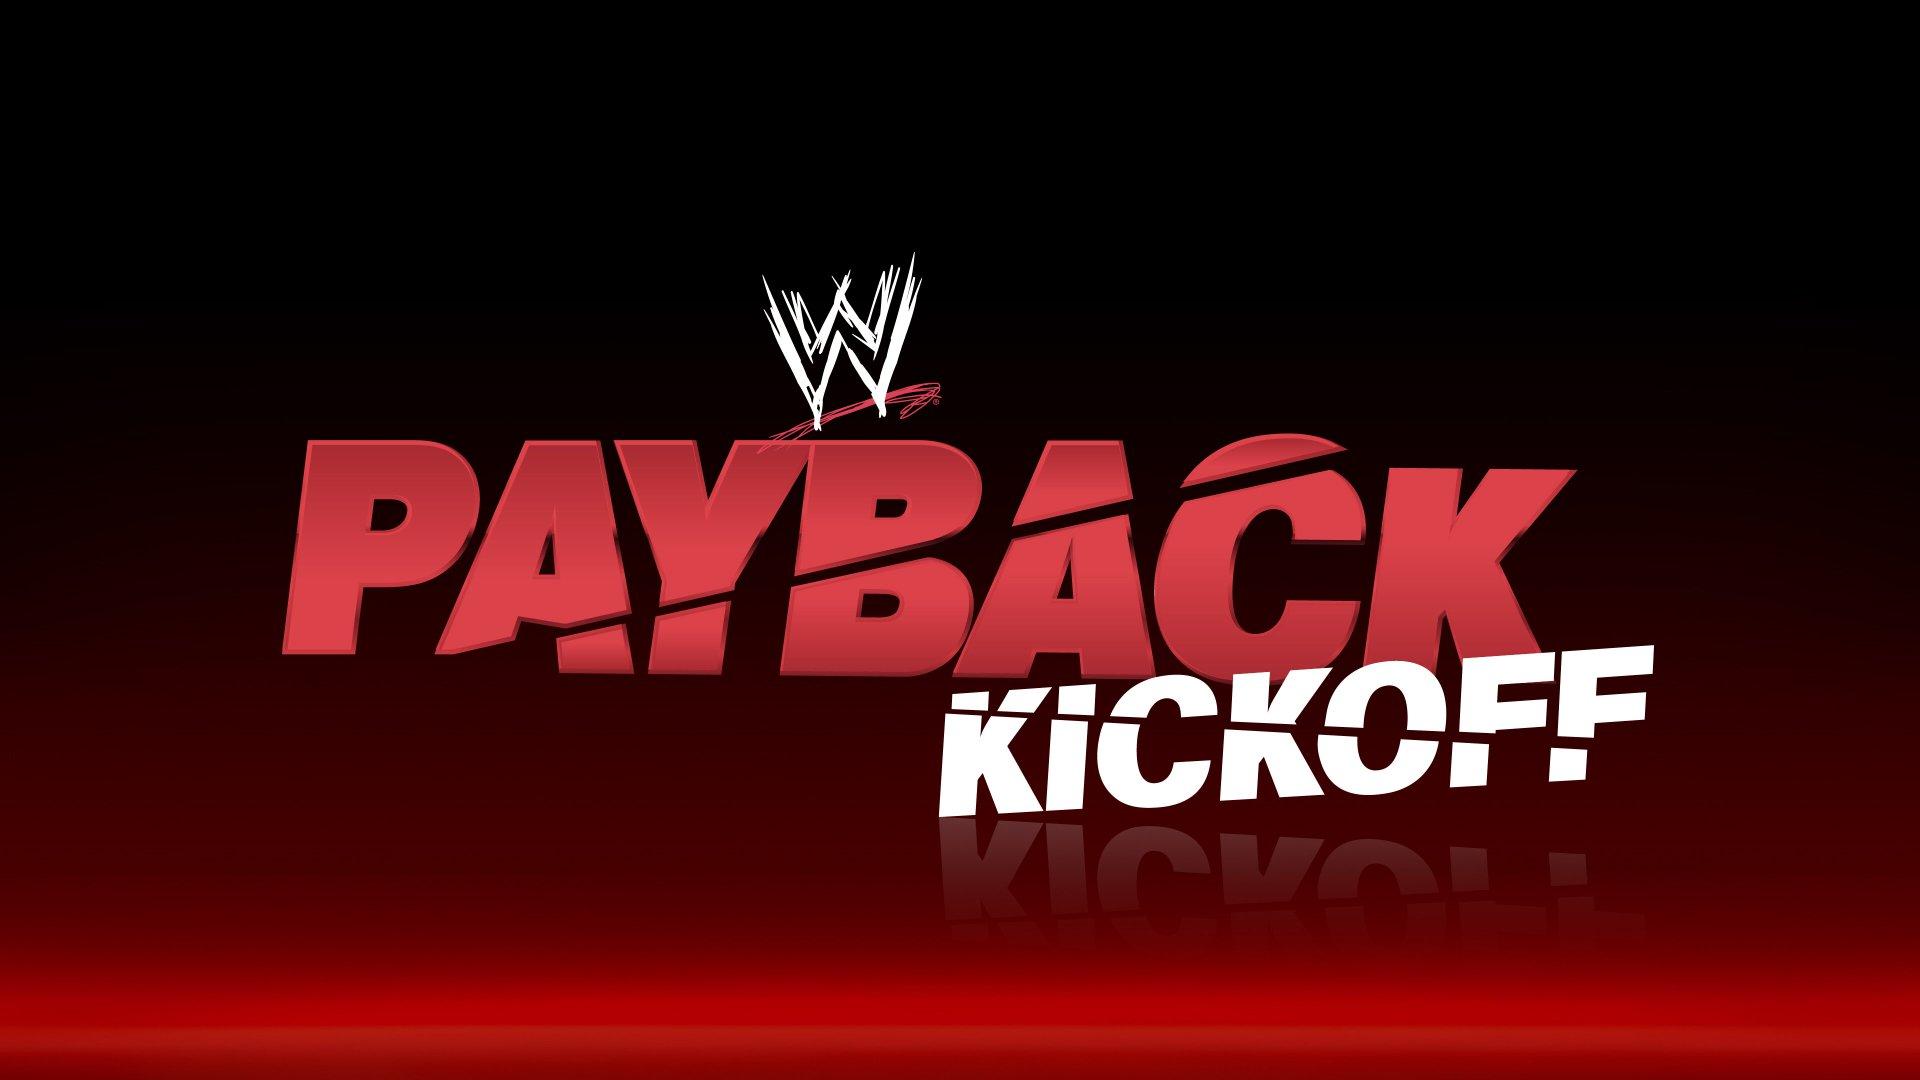 WWE Payback 2014 Kickoff